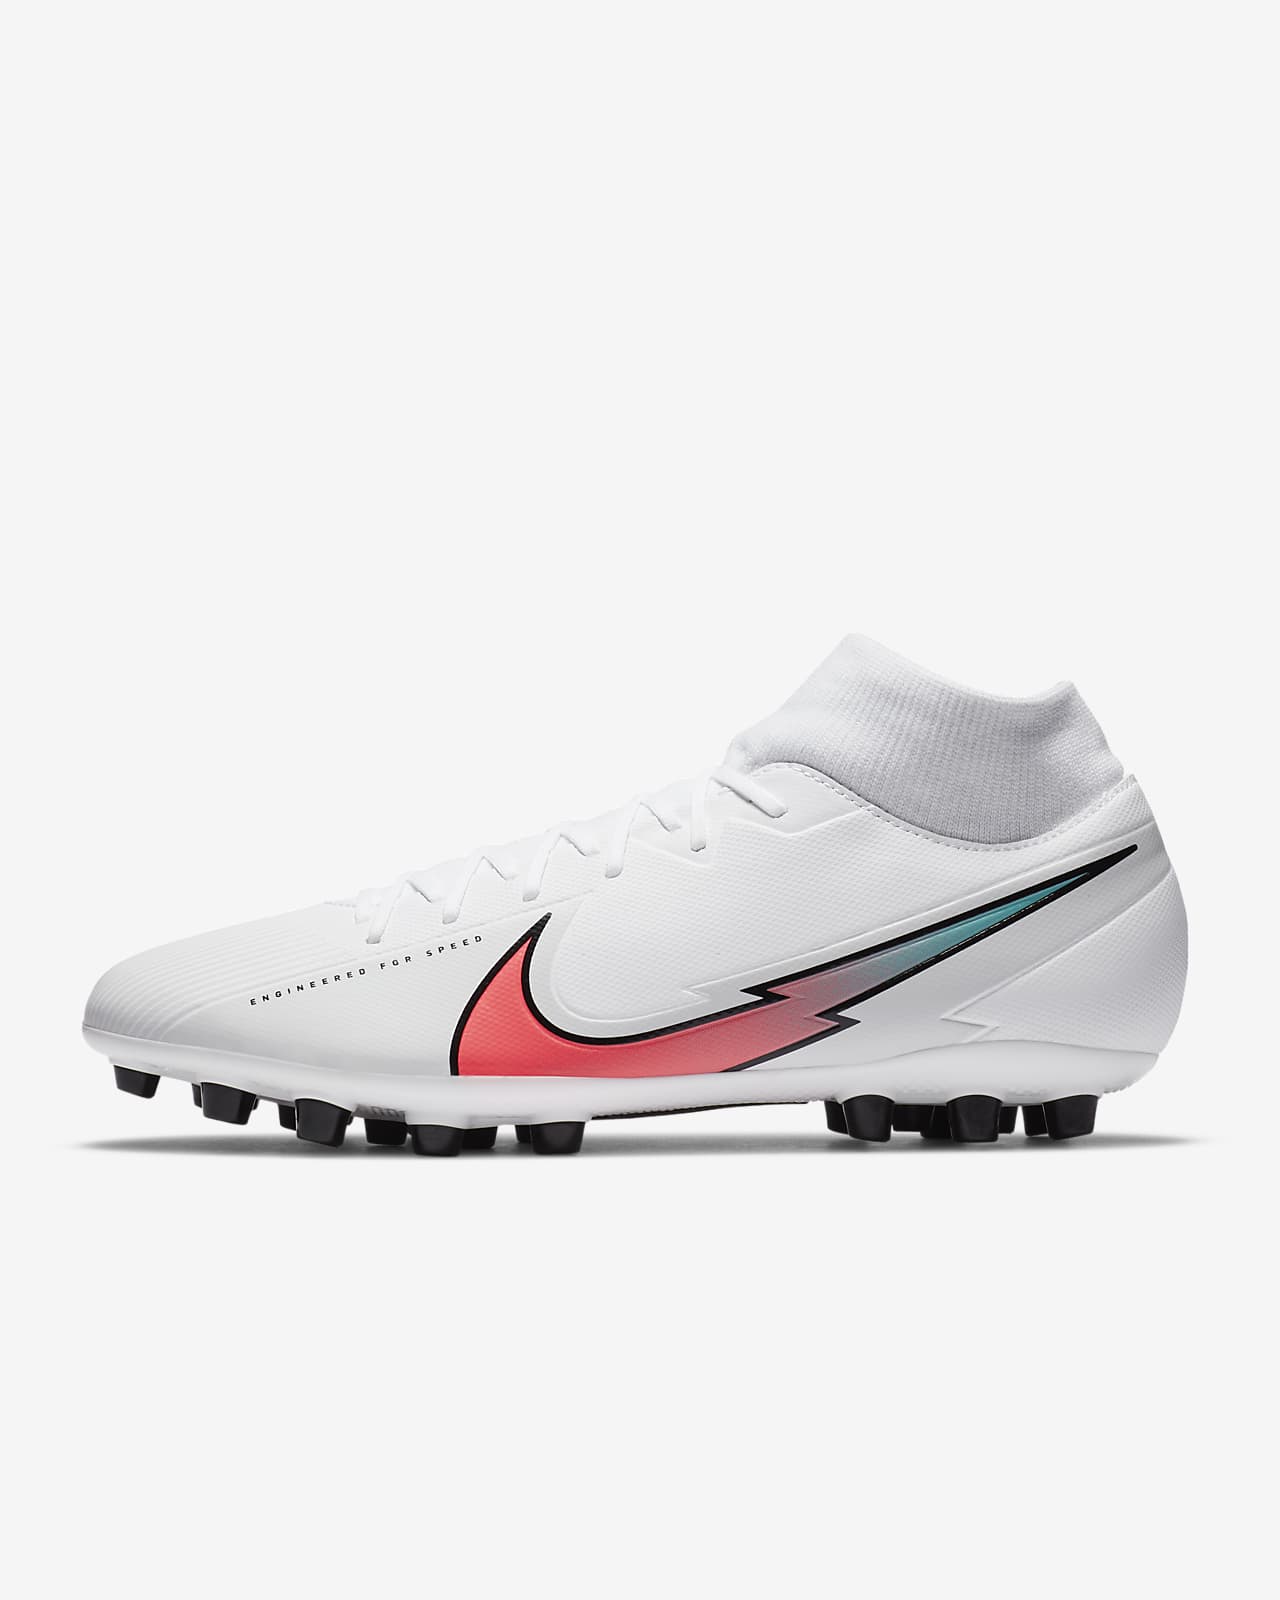 nike artificial grass football boots